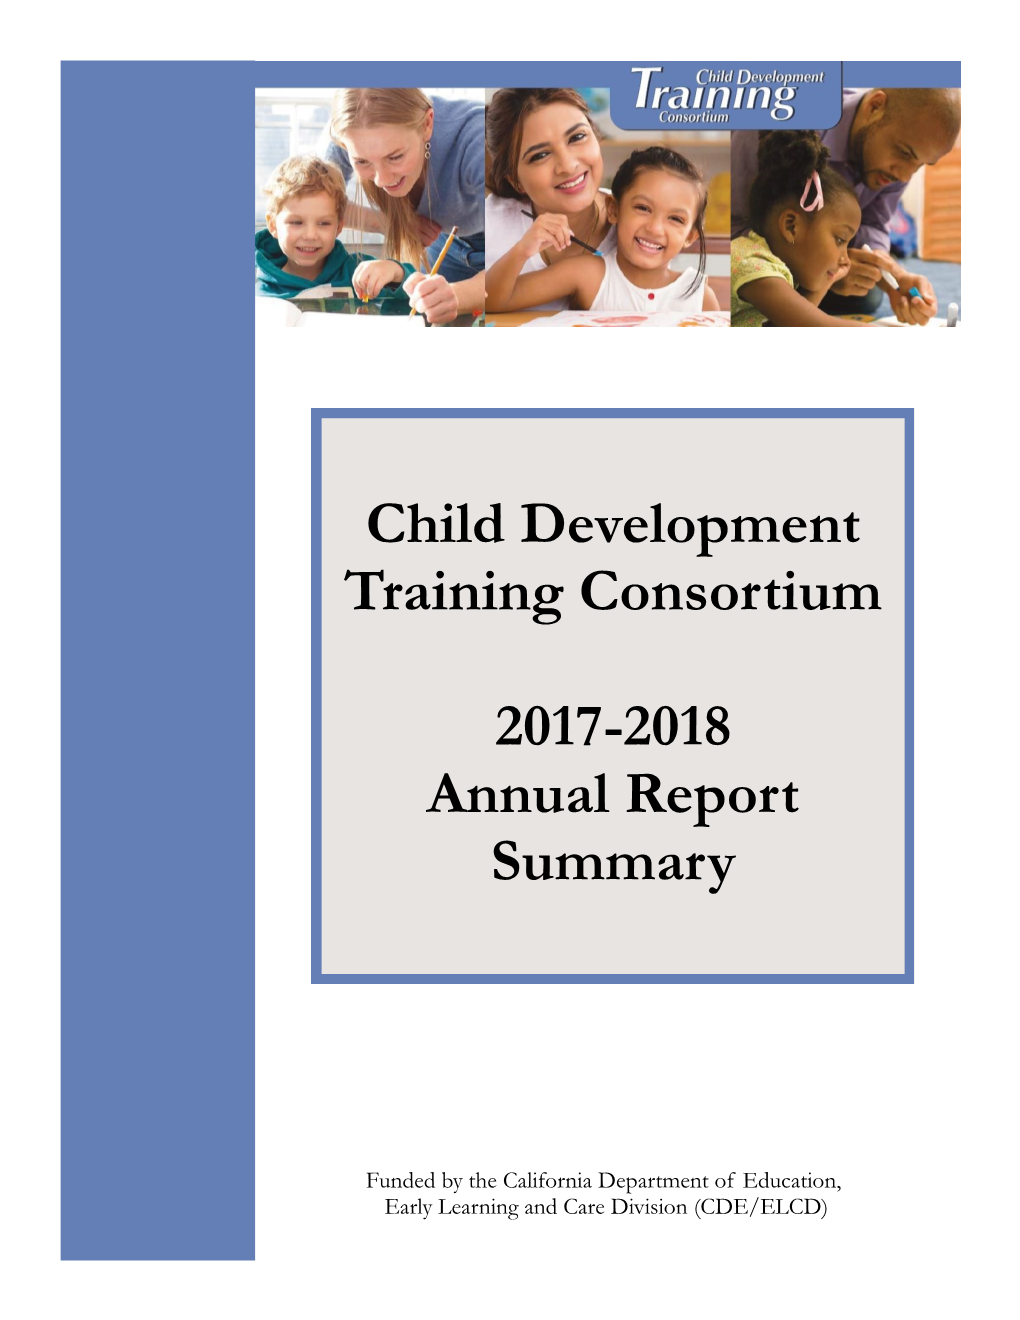 Child Development Training Consortium